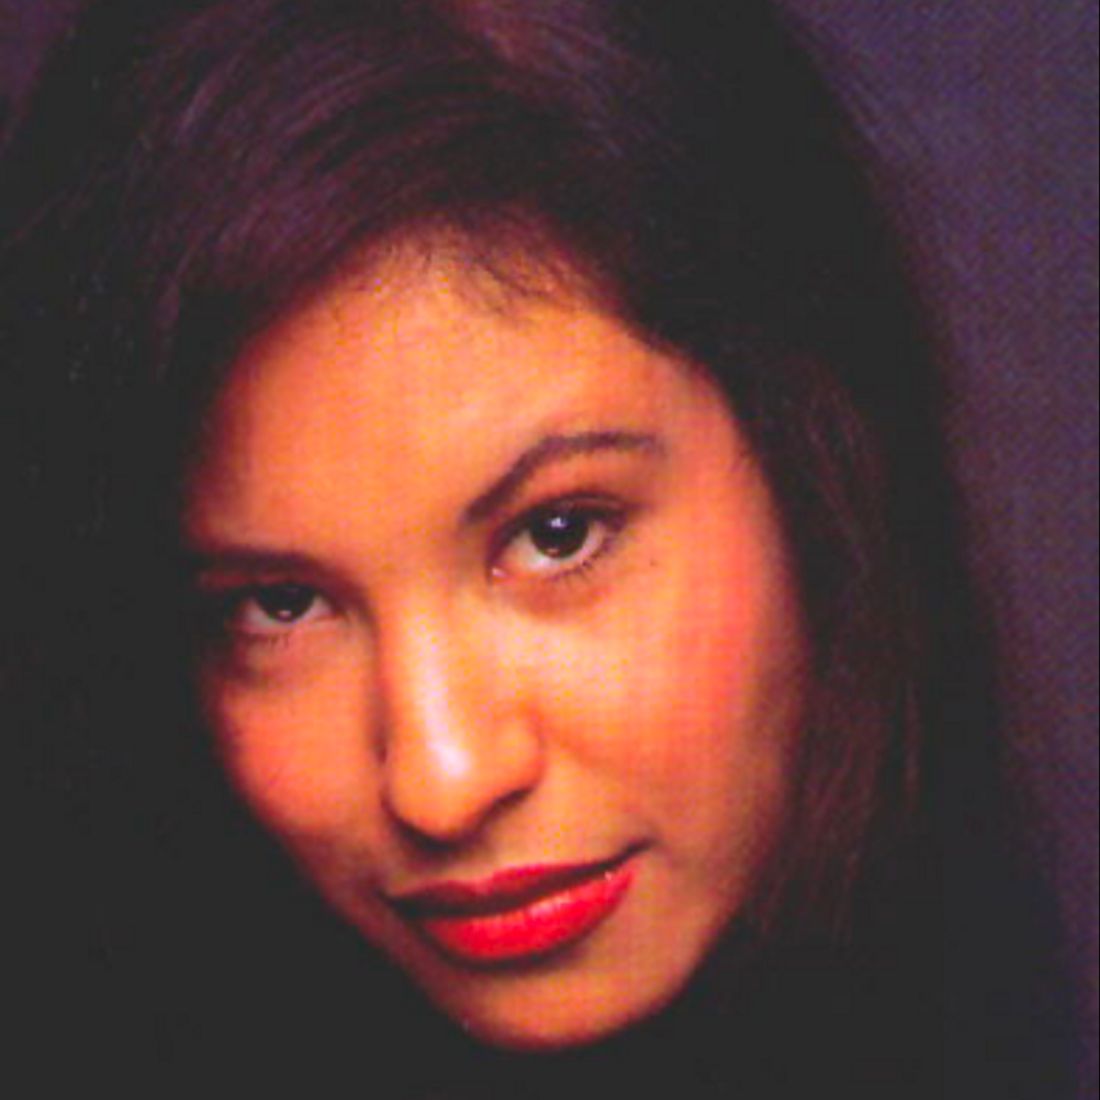 Selena Quintanilla Perez